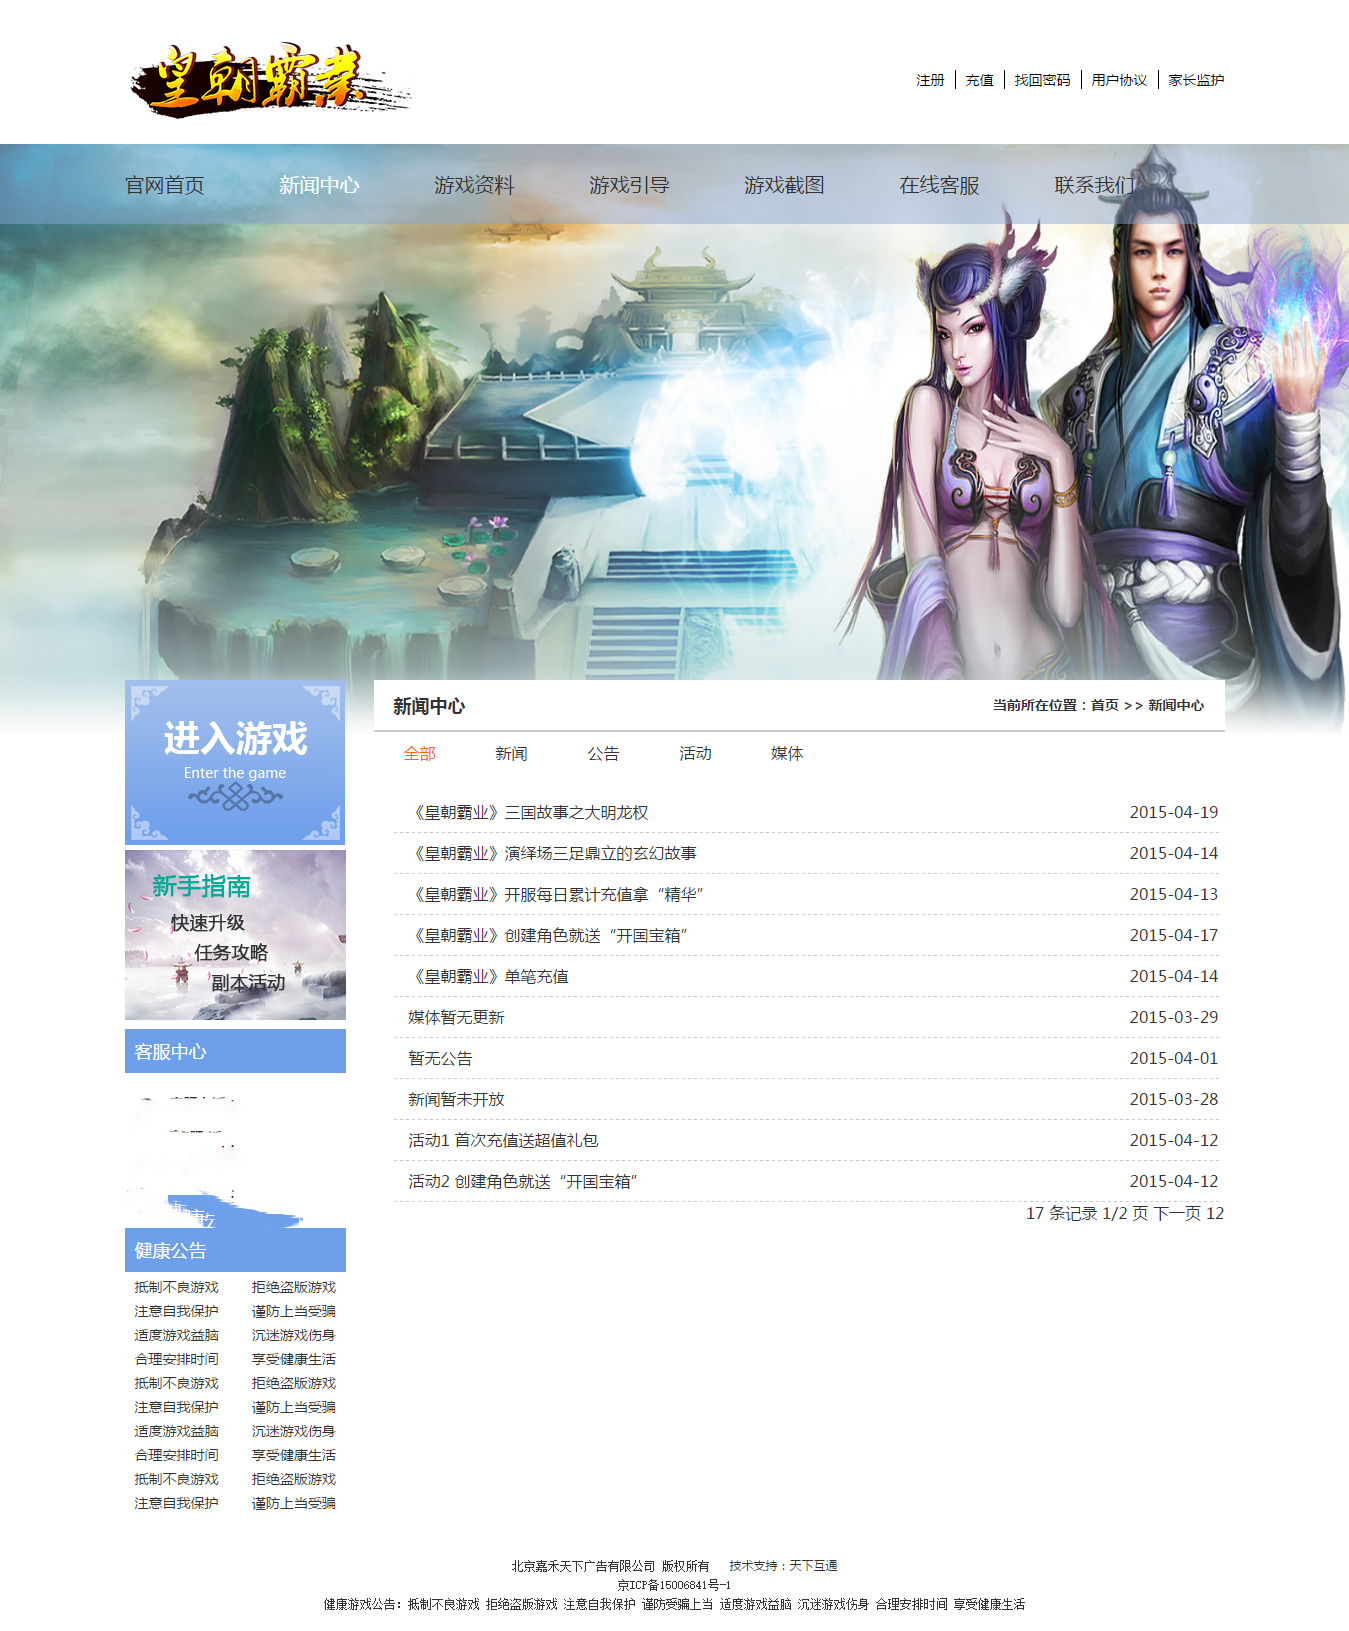 皇朝霸业游戏网站建设新闻中心